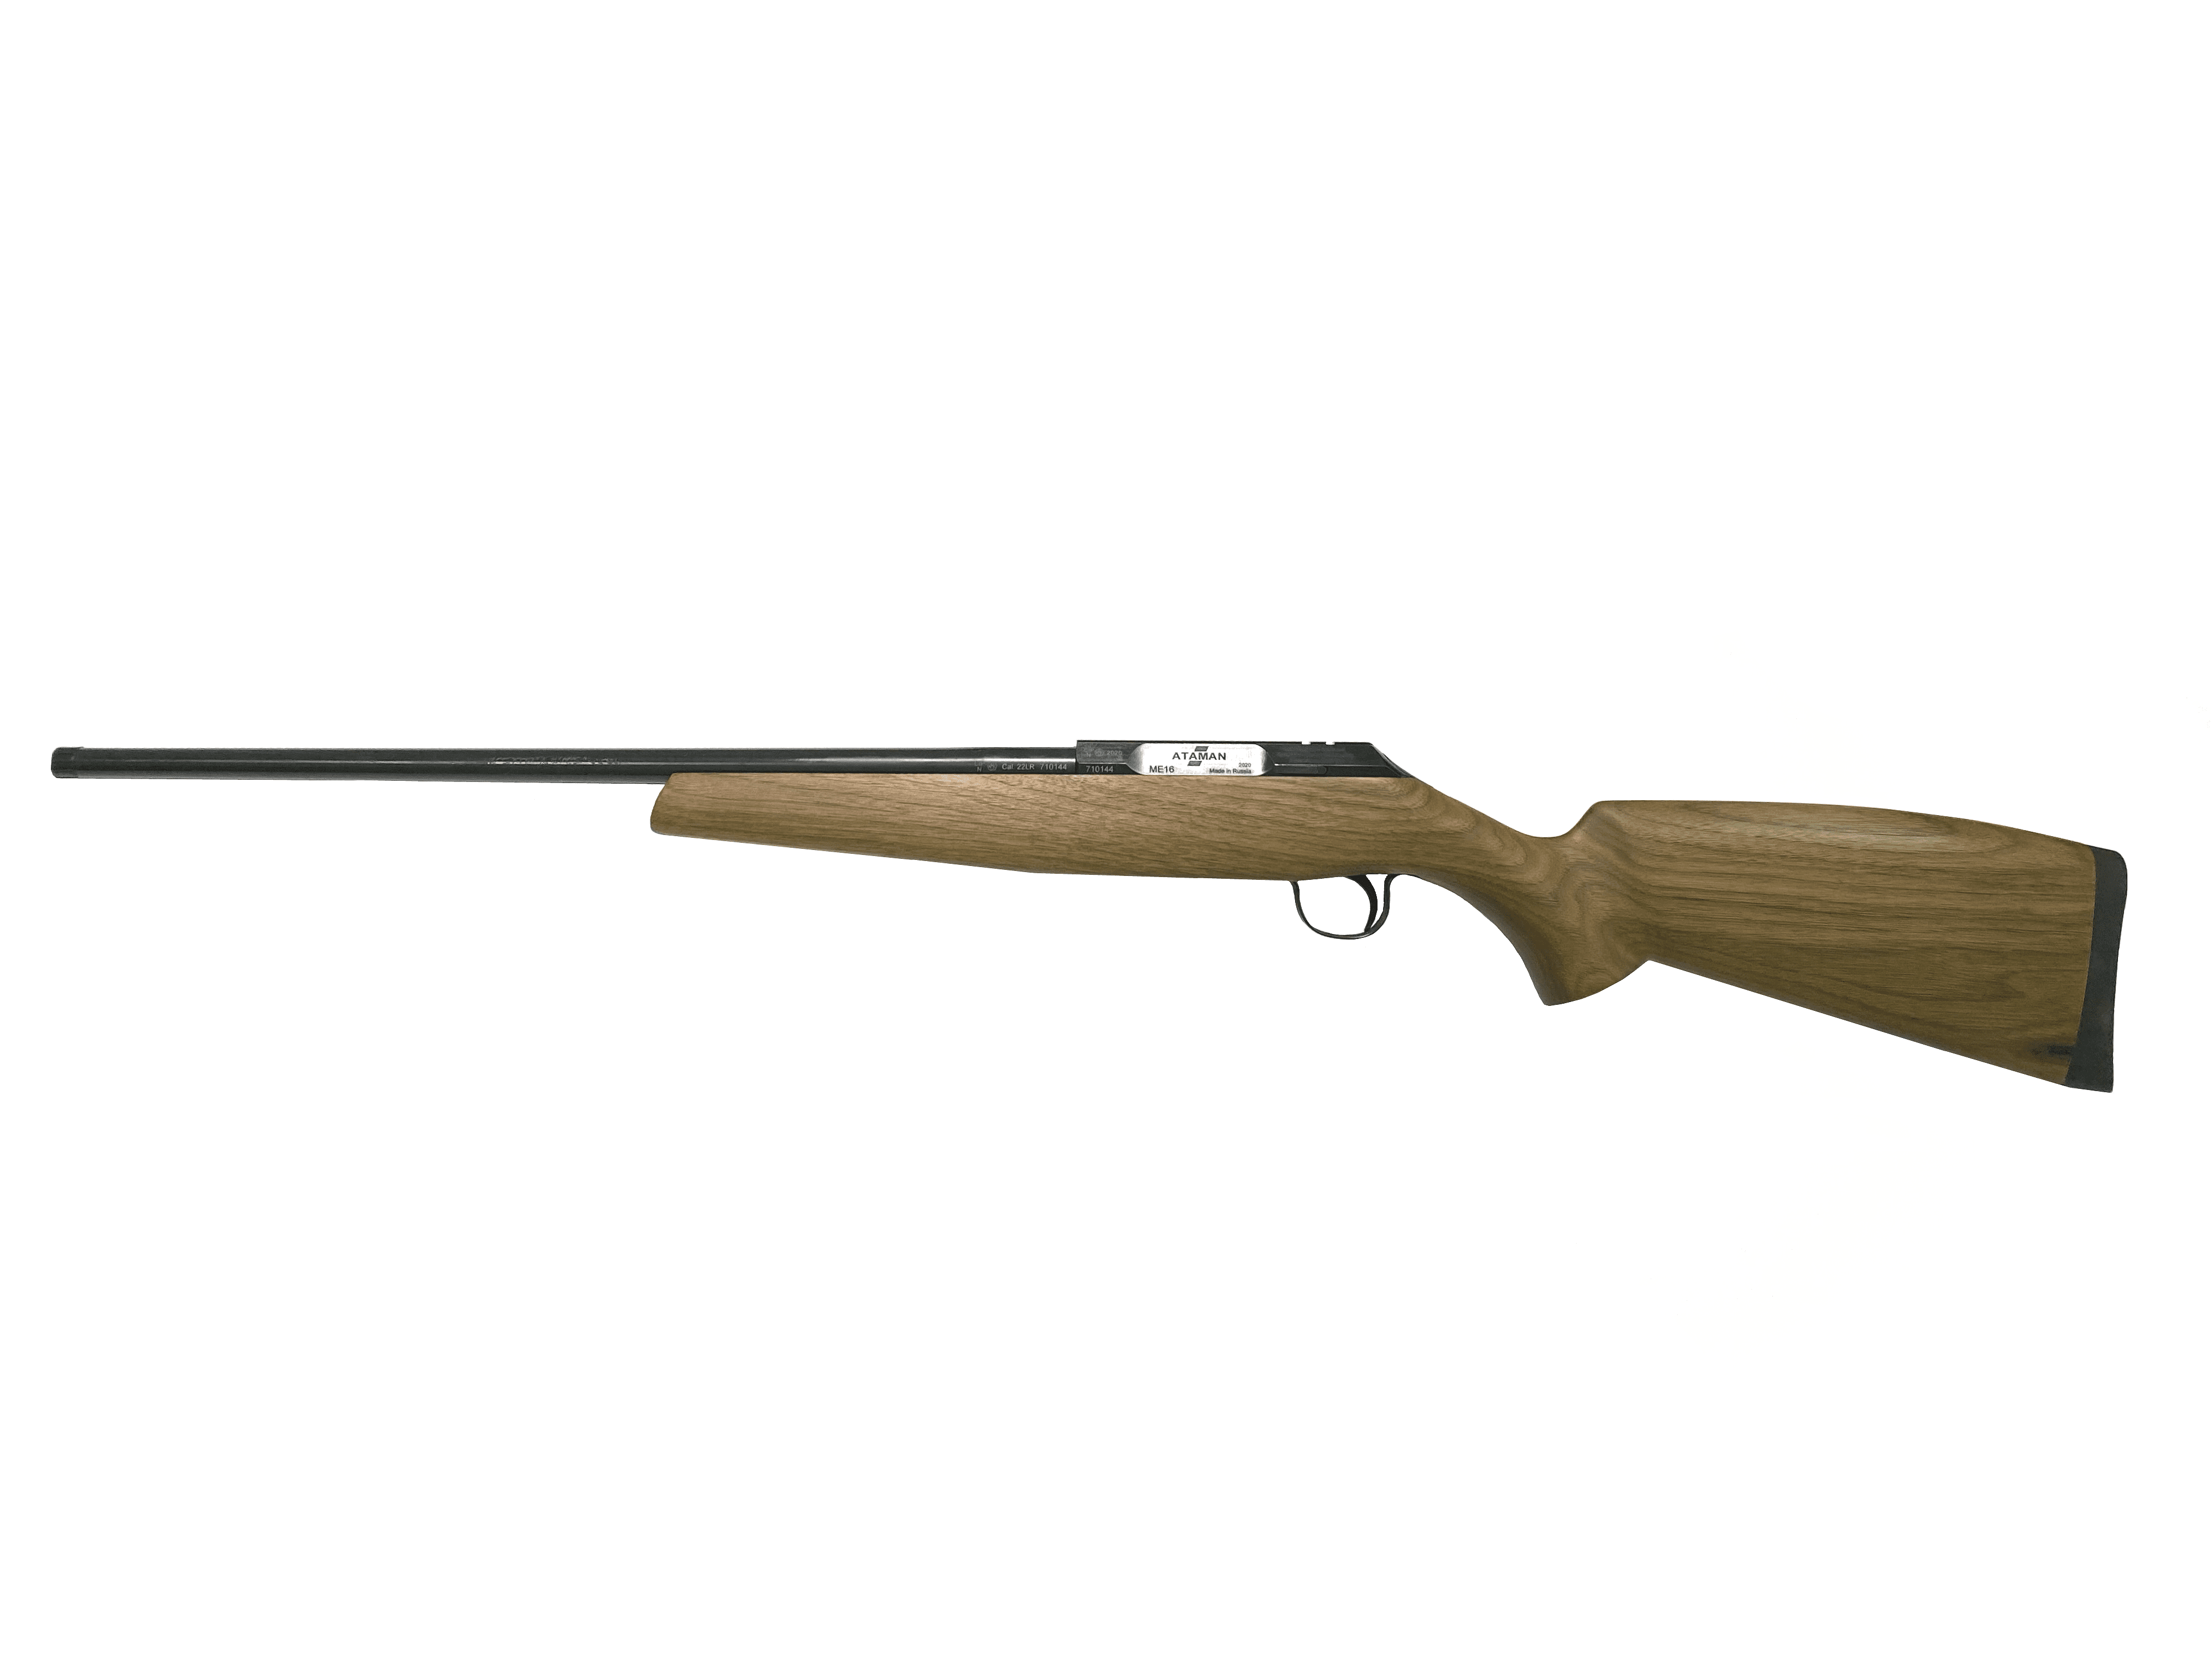 Малокалиберная винтовка ATAMAN ME16 .22LR (Walnut)